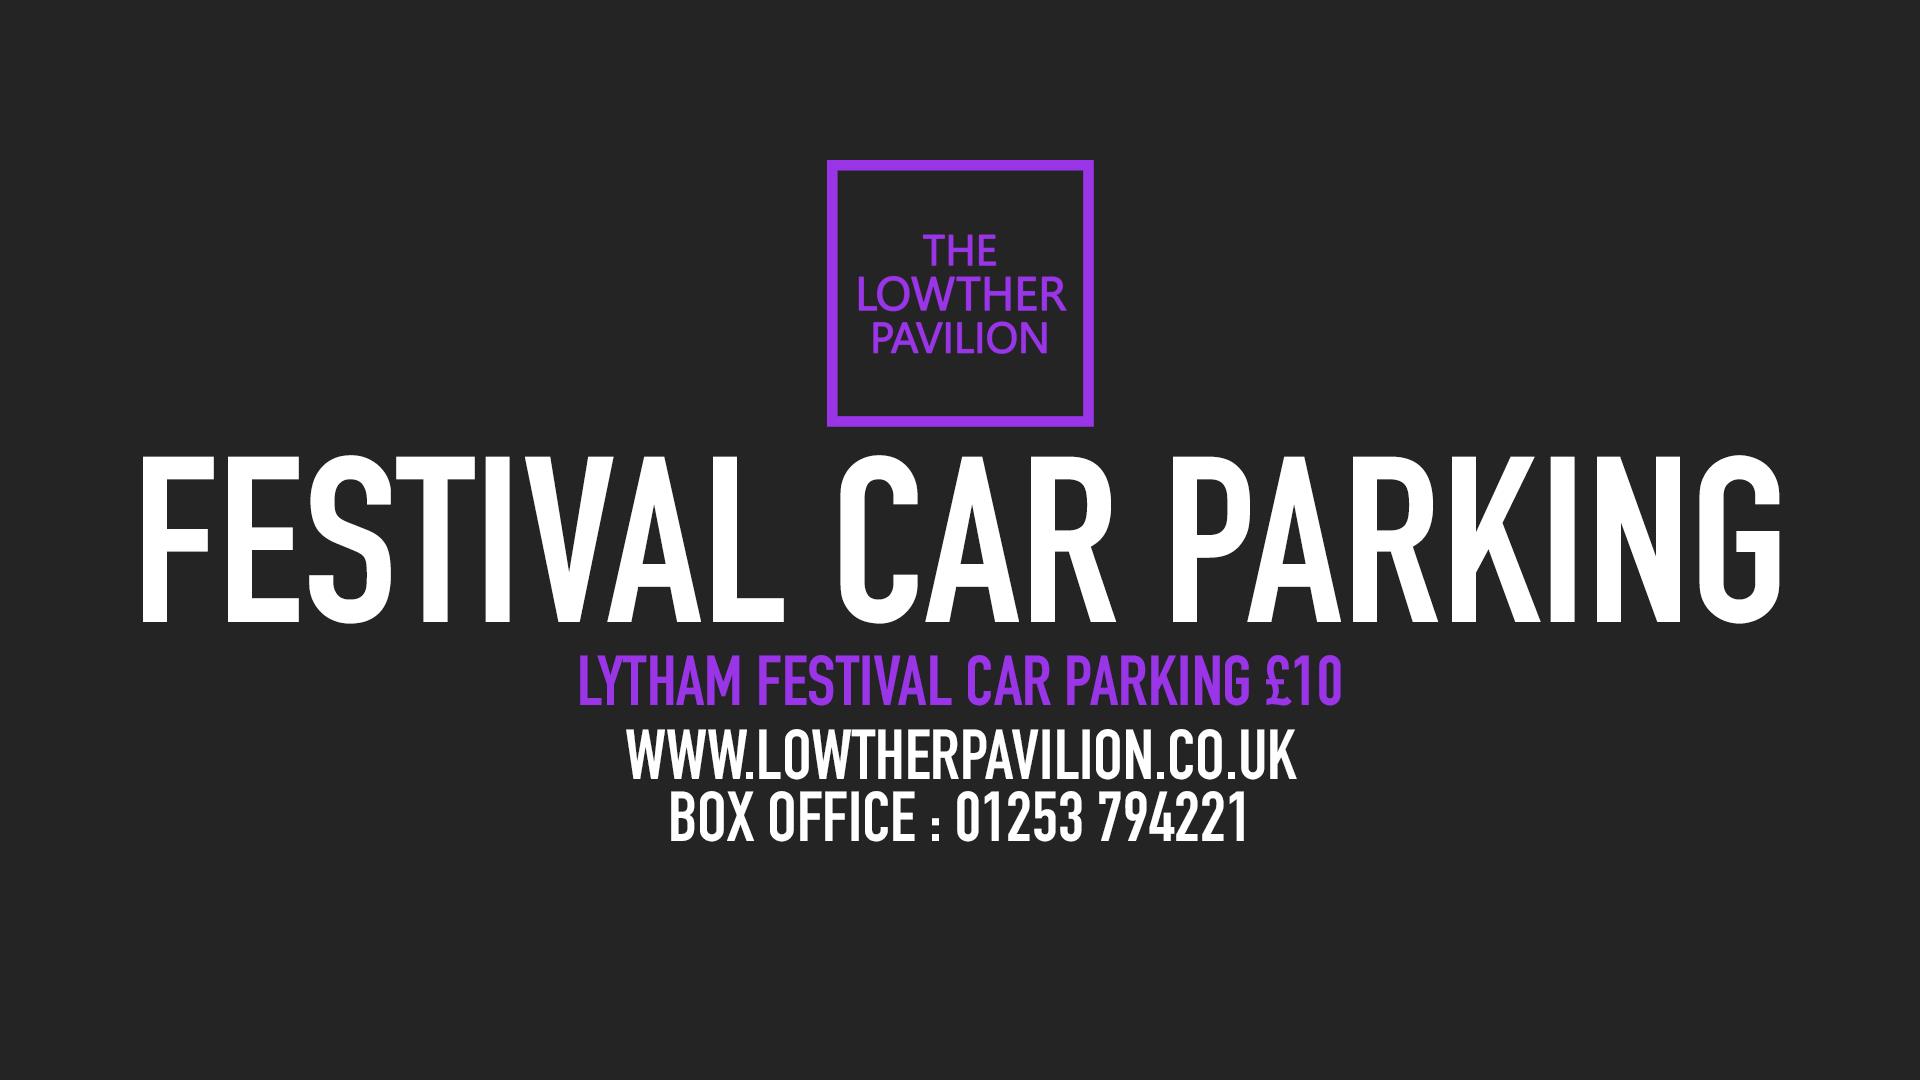 Festival Car Parking 2022 - Lowther Pavilion